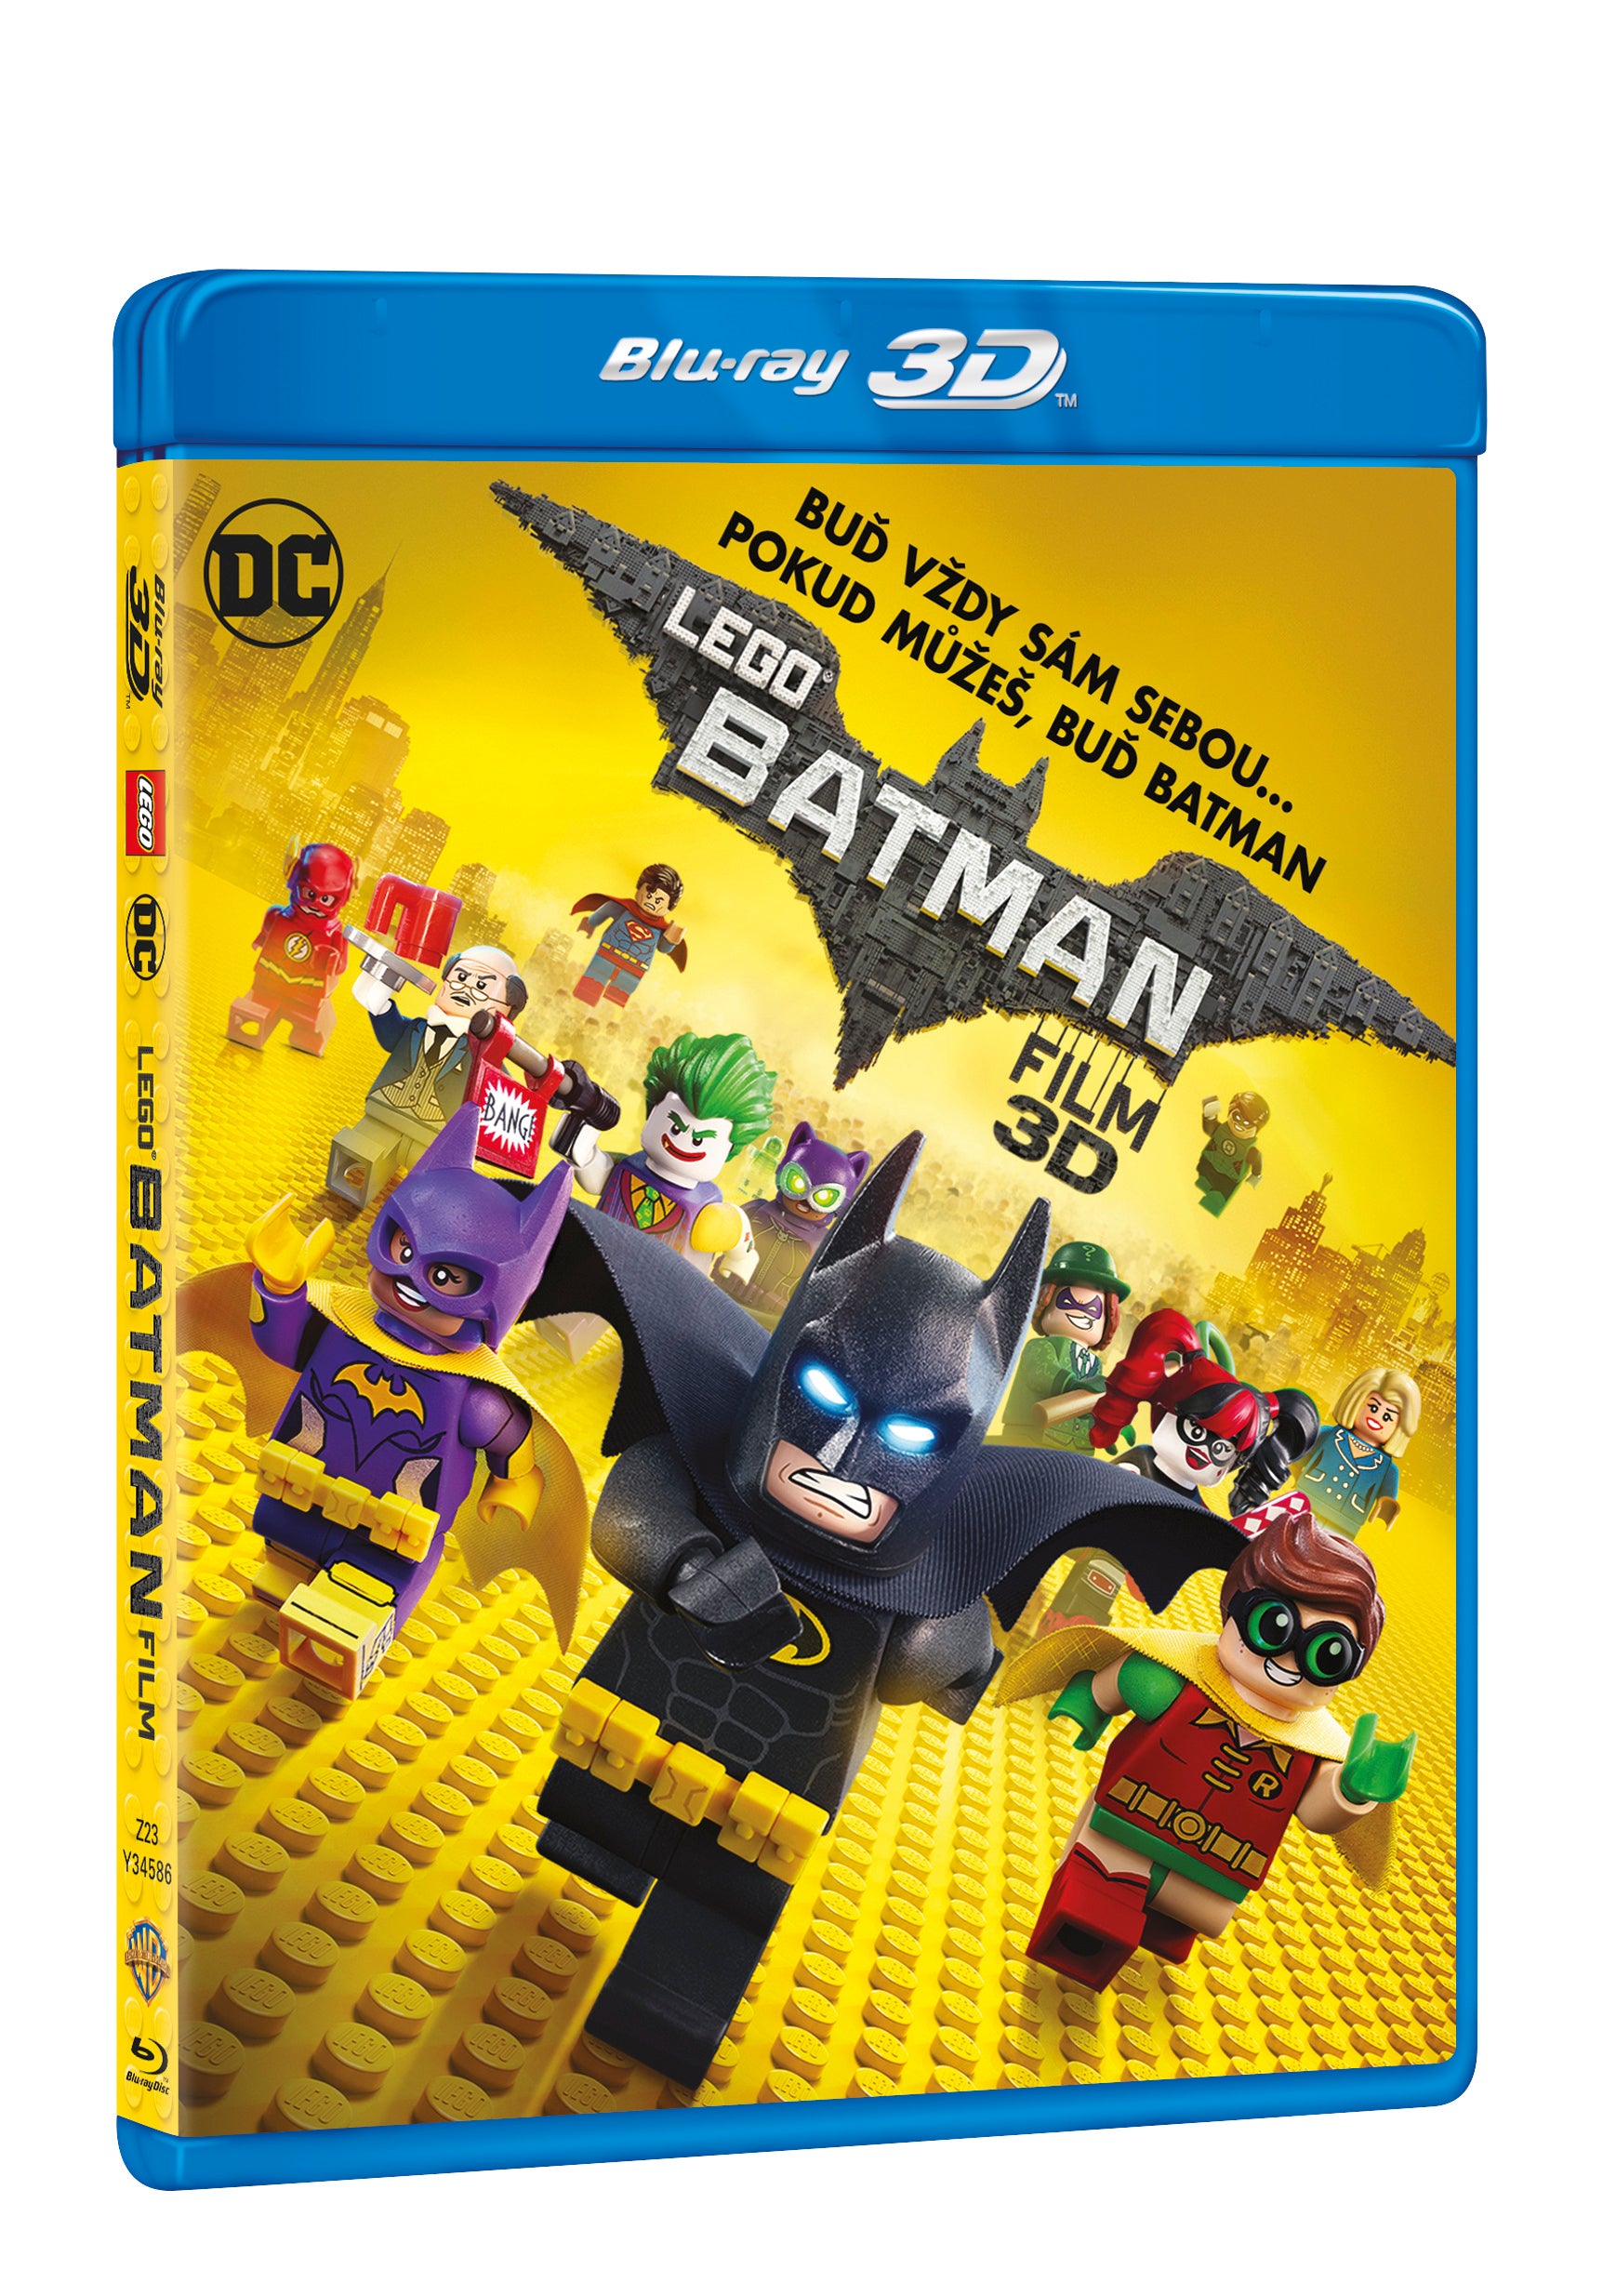 Lego Batman Film 2BD (3D+2D) / The LEGO Batman Movie - Czech version